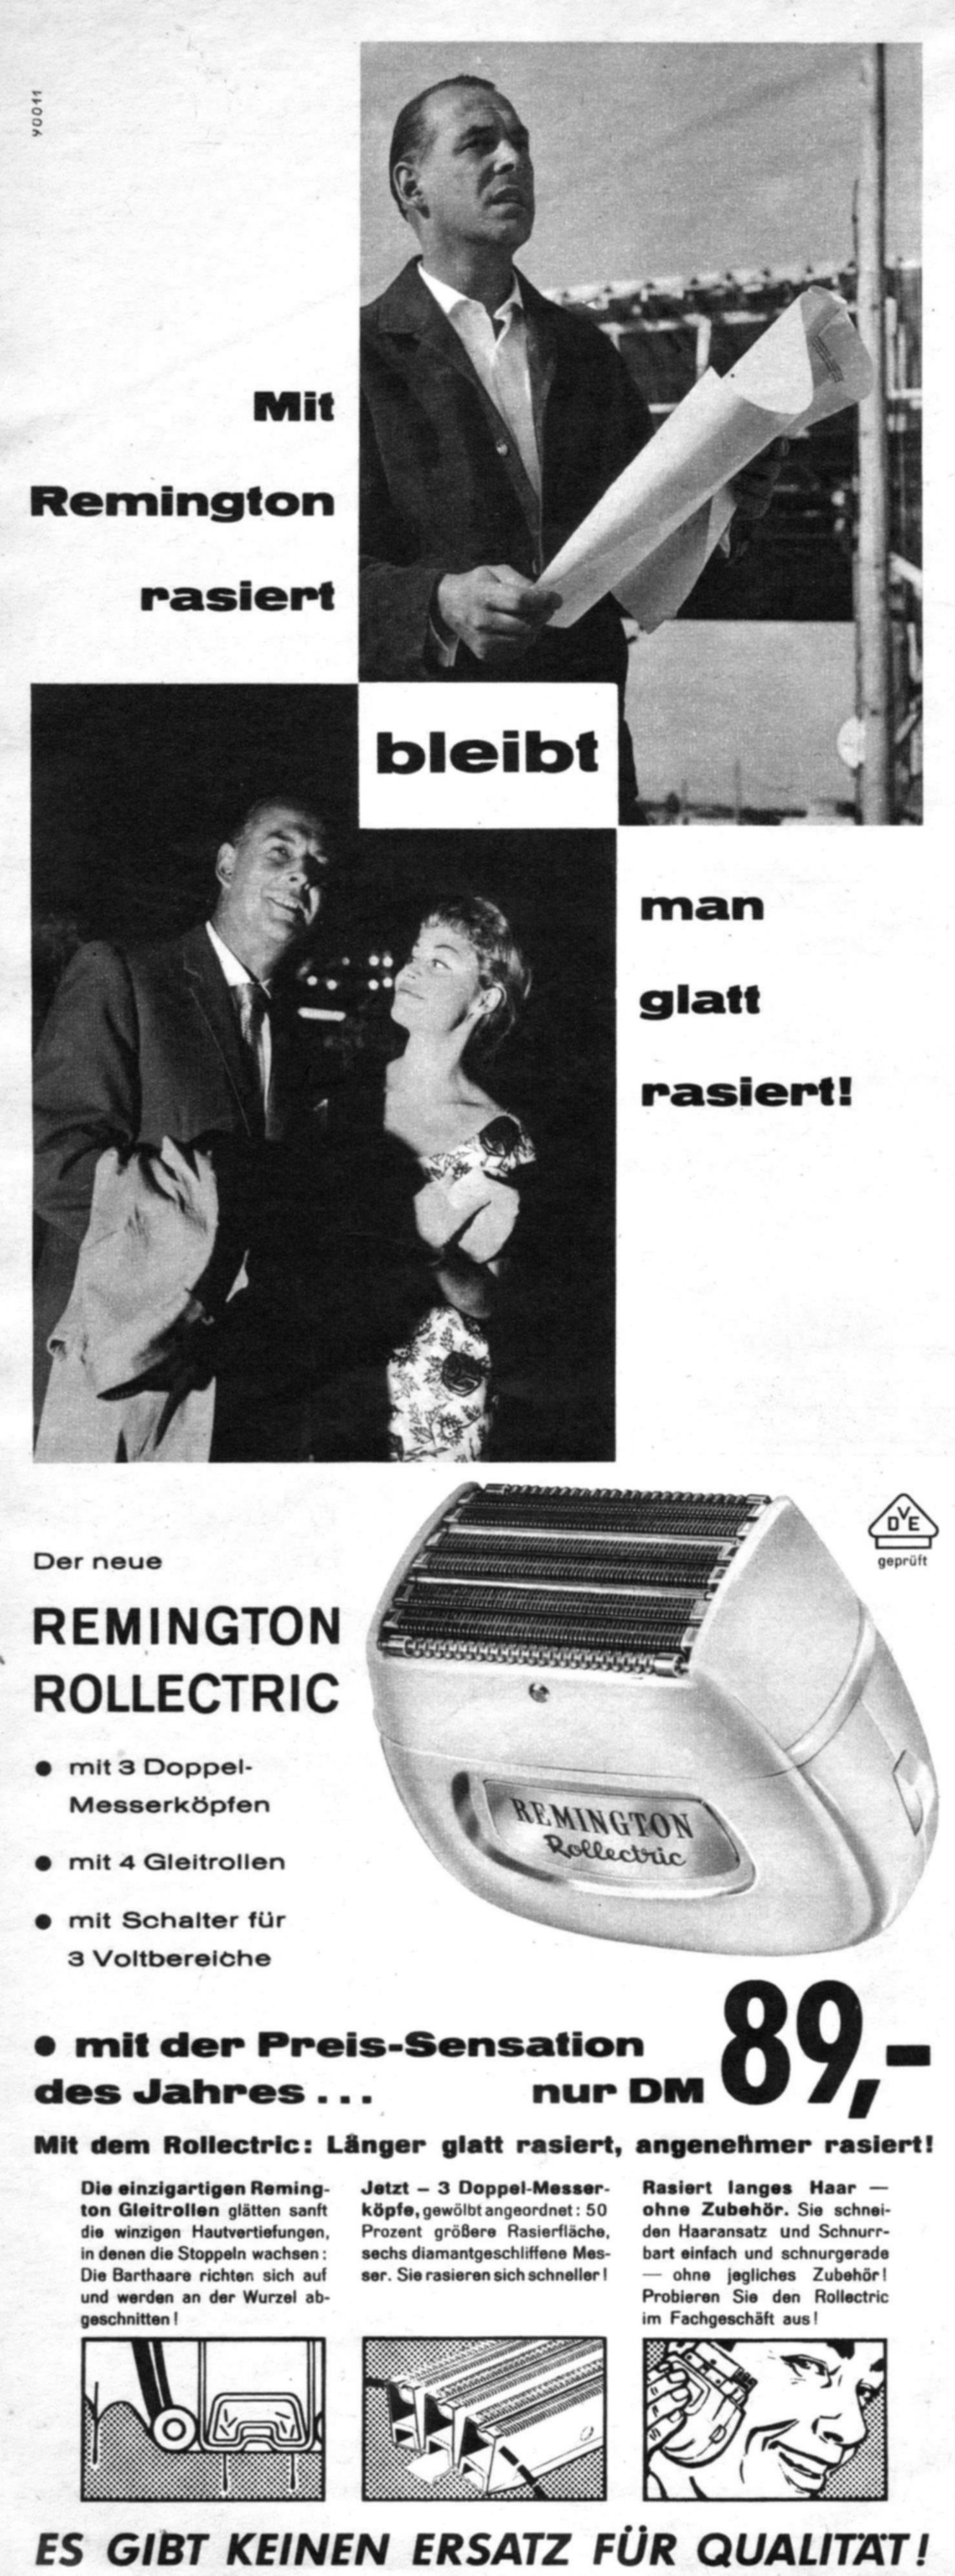 Remigton 1960 219.jpg